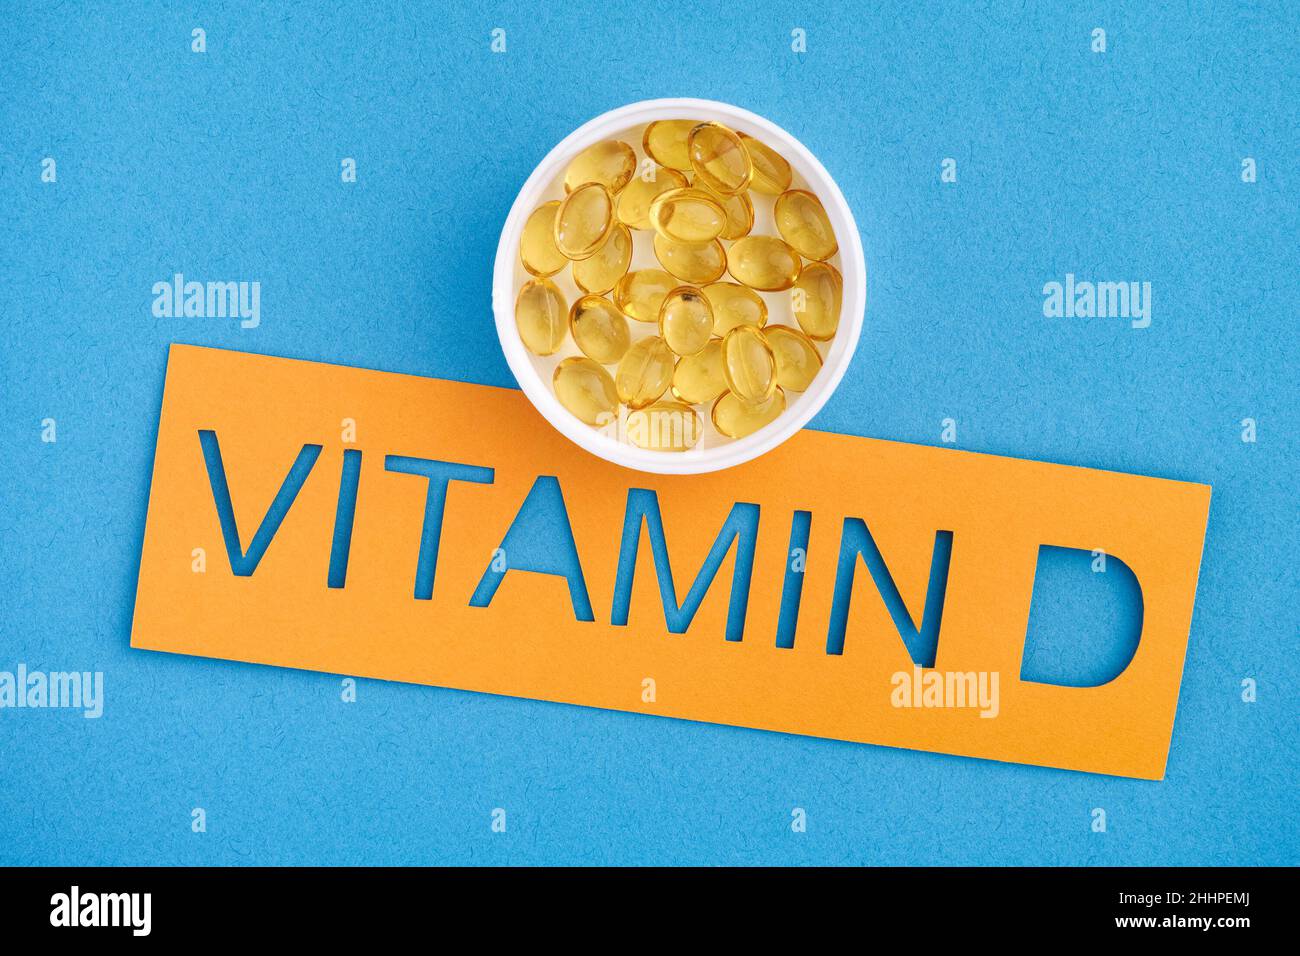 Das Wort Vitamin D mit einer kleinen Tasse Vitamin D3 Kapseln darauf. Nahaufnahme. Stockfoto